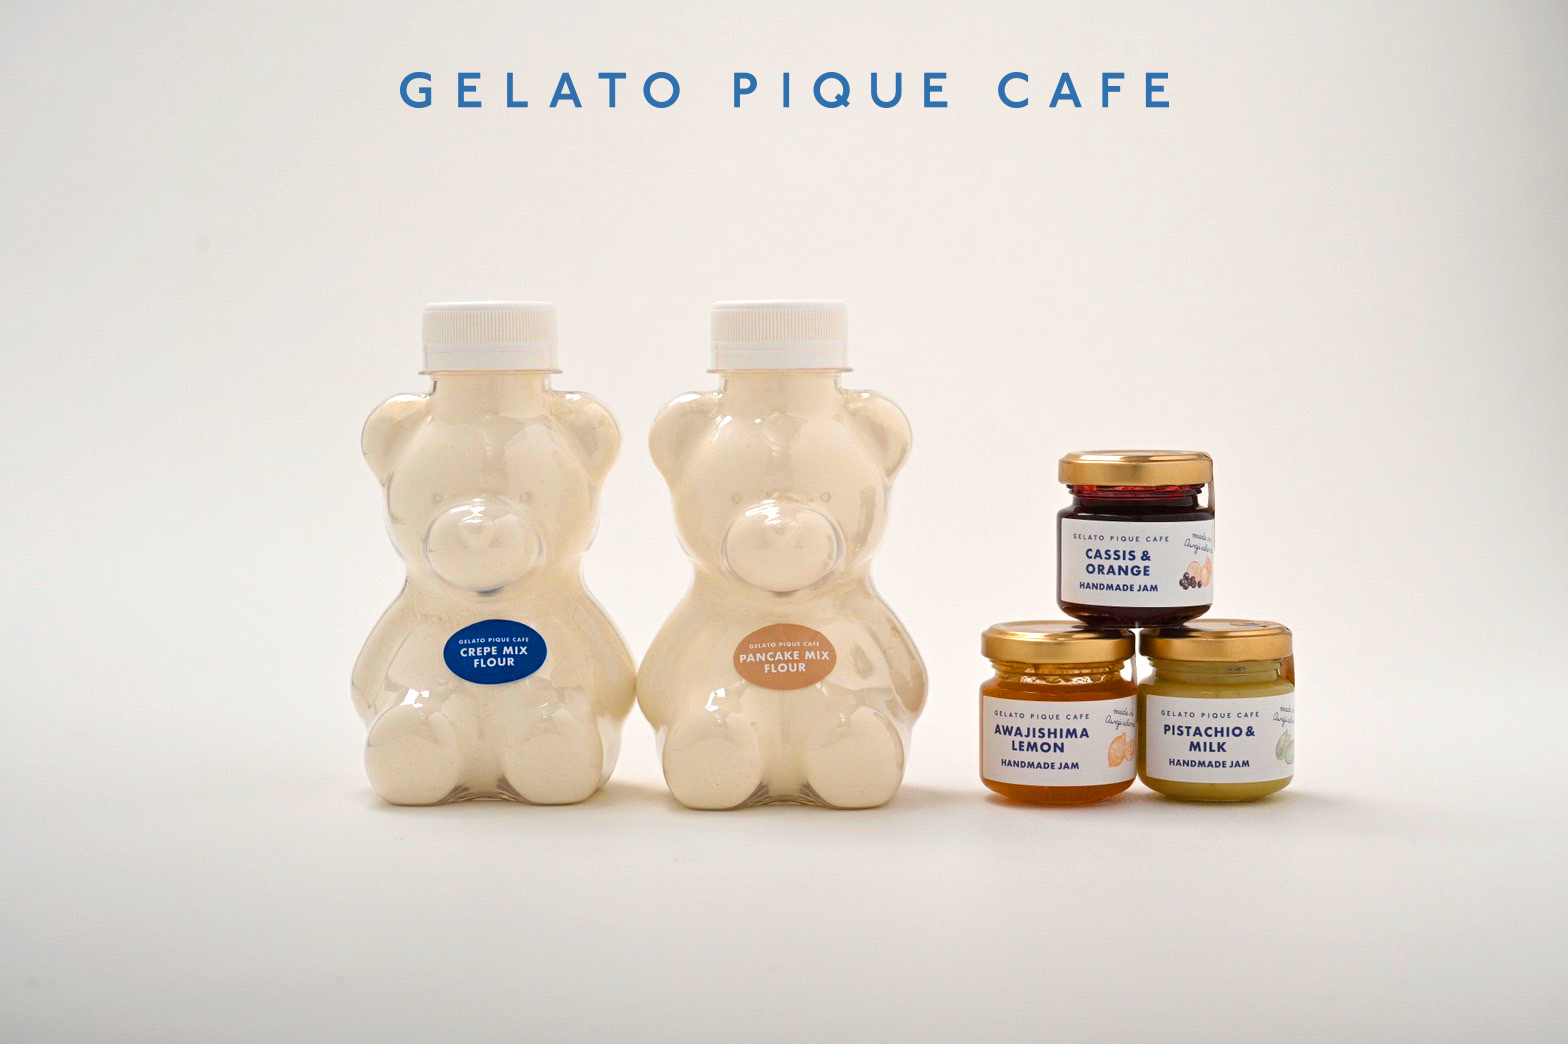 【gelato pique cafe】ベア形ボトルに入ったパンケーキミックス粉など全5商品が登場🧸🥞🤍